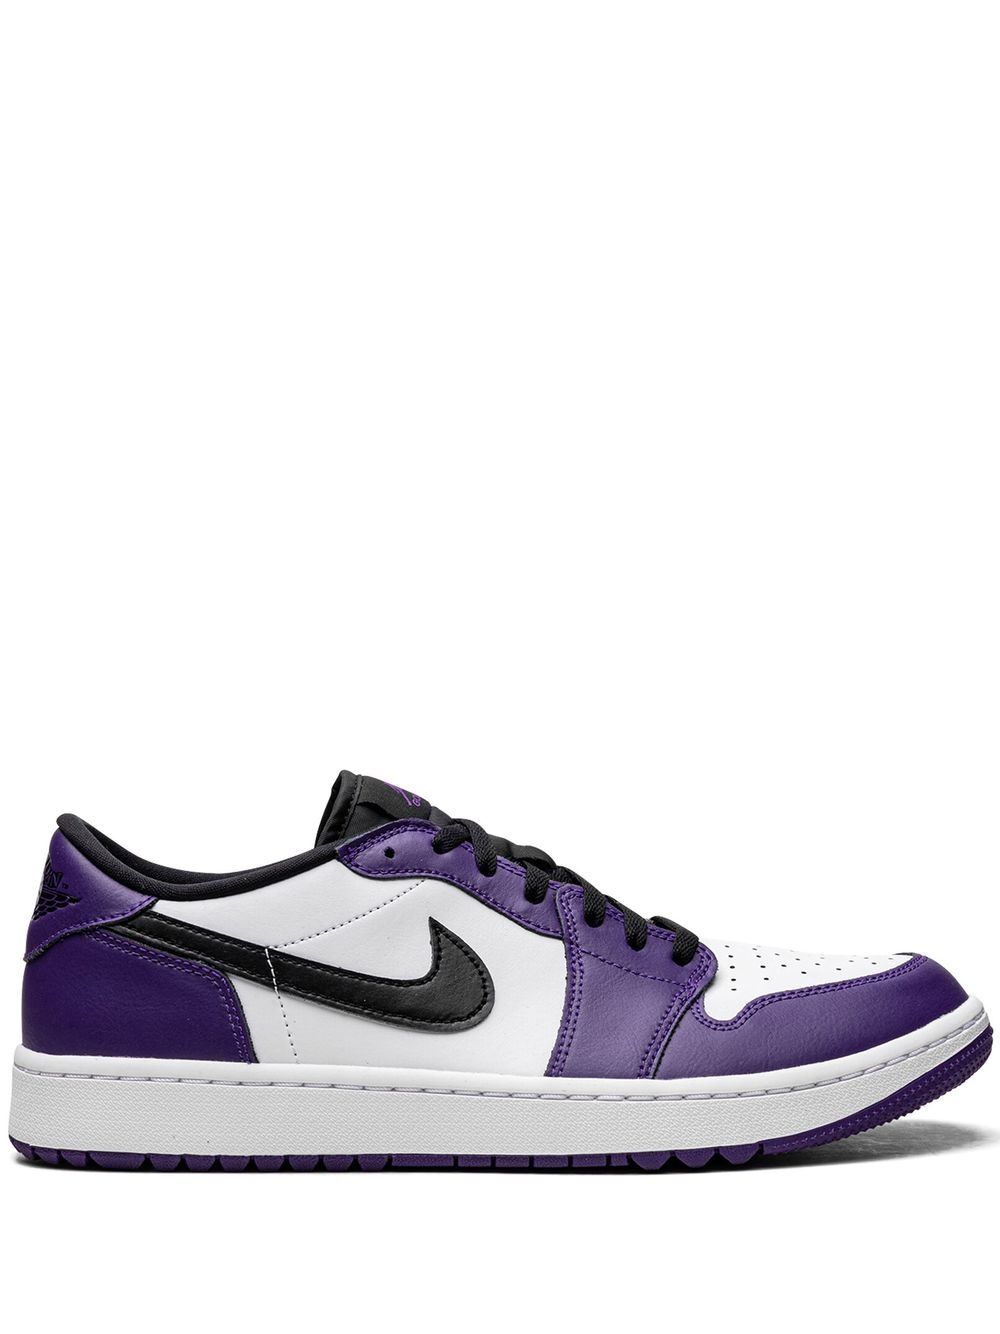 Jordan Air Jordan 1 Low Golf sneakers - Purple